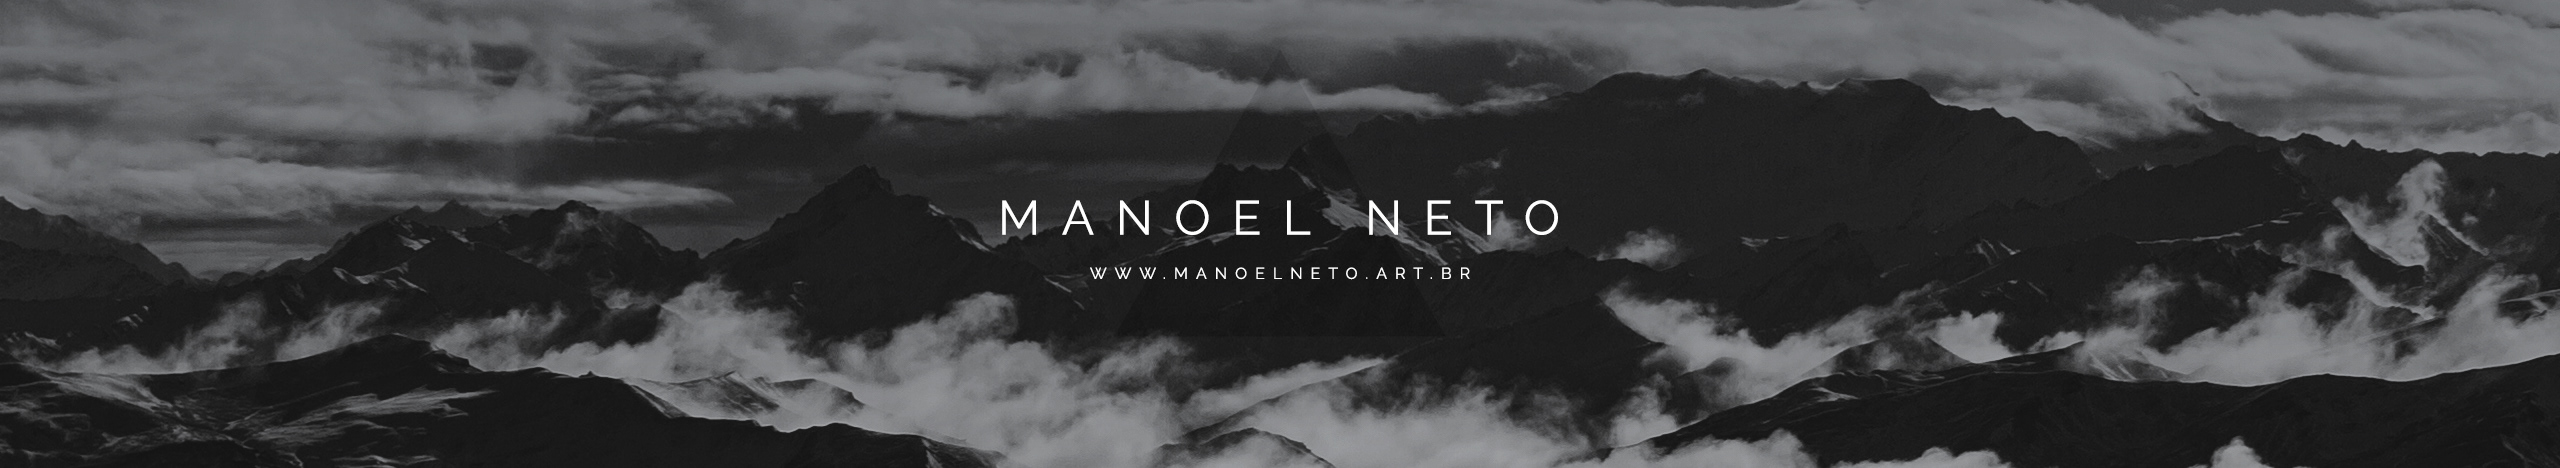 Manoel Neto's profile banner